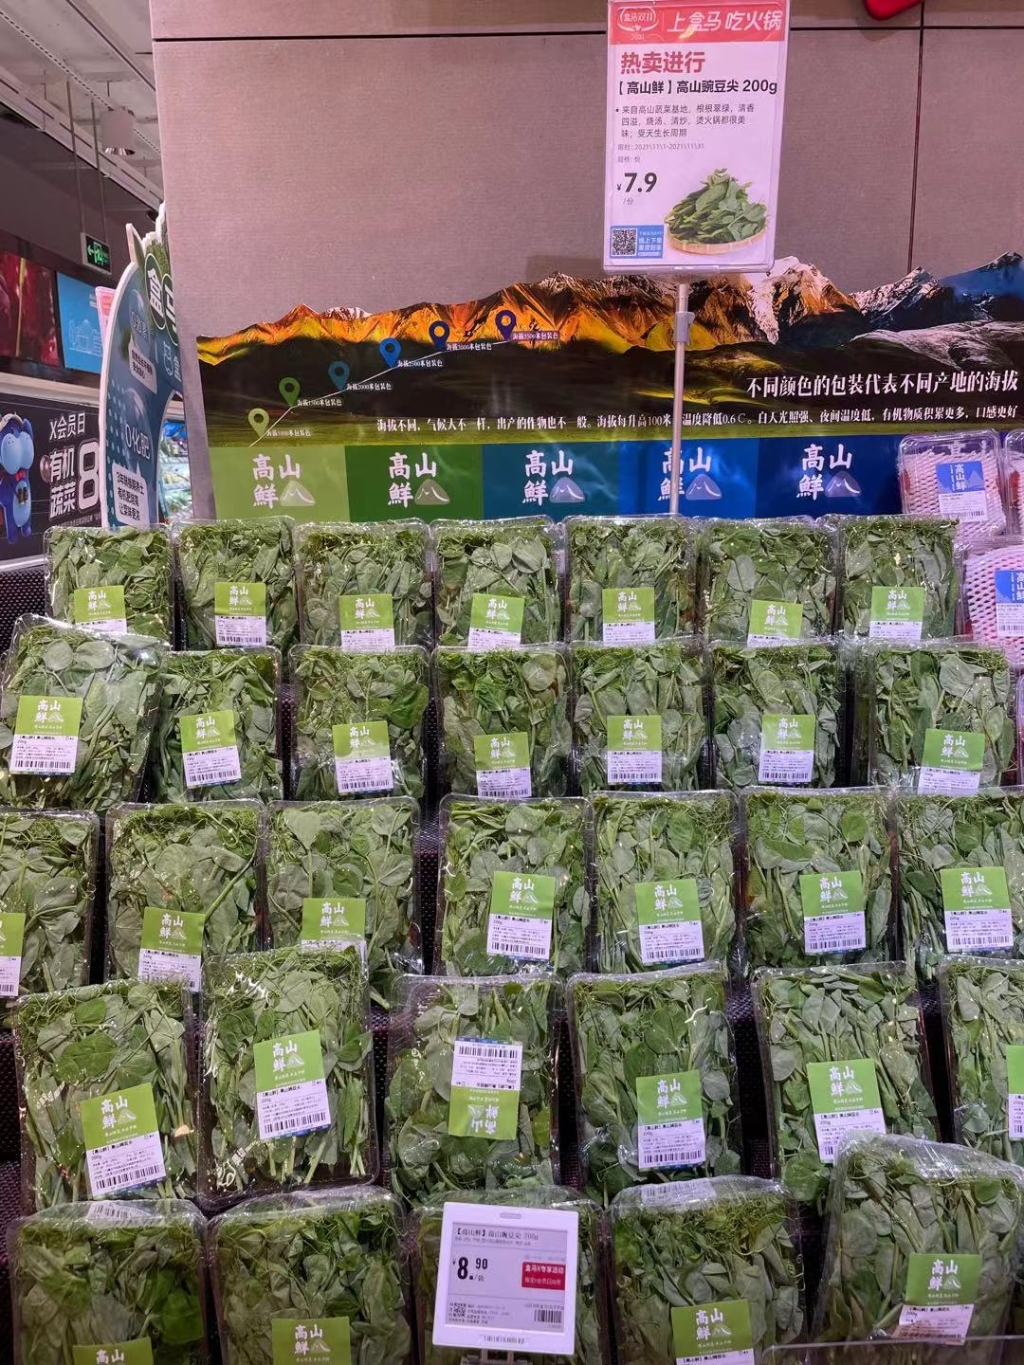 重庆盒马蔬菜供应是平时的5倍 重庆盒马供图 华龙网-新重庆客户端 发